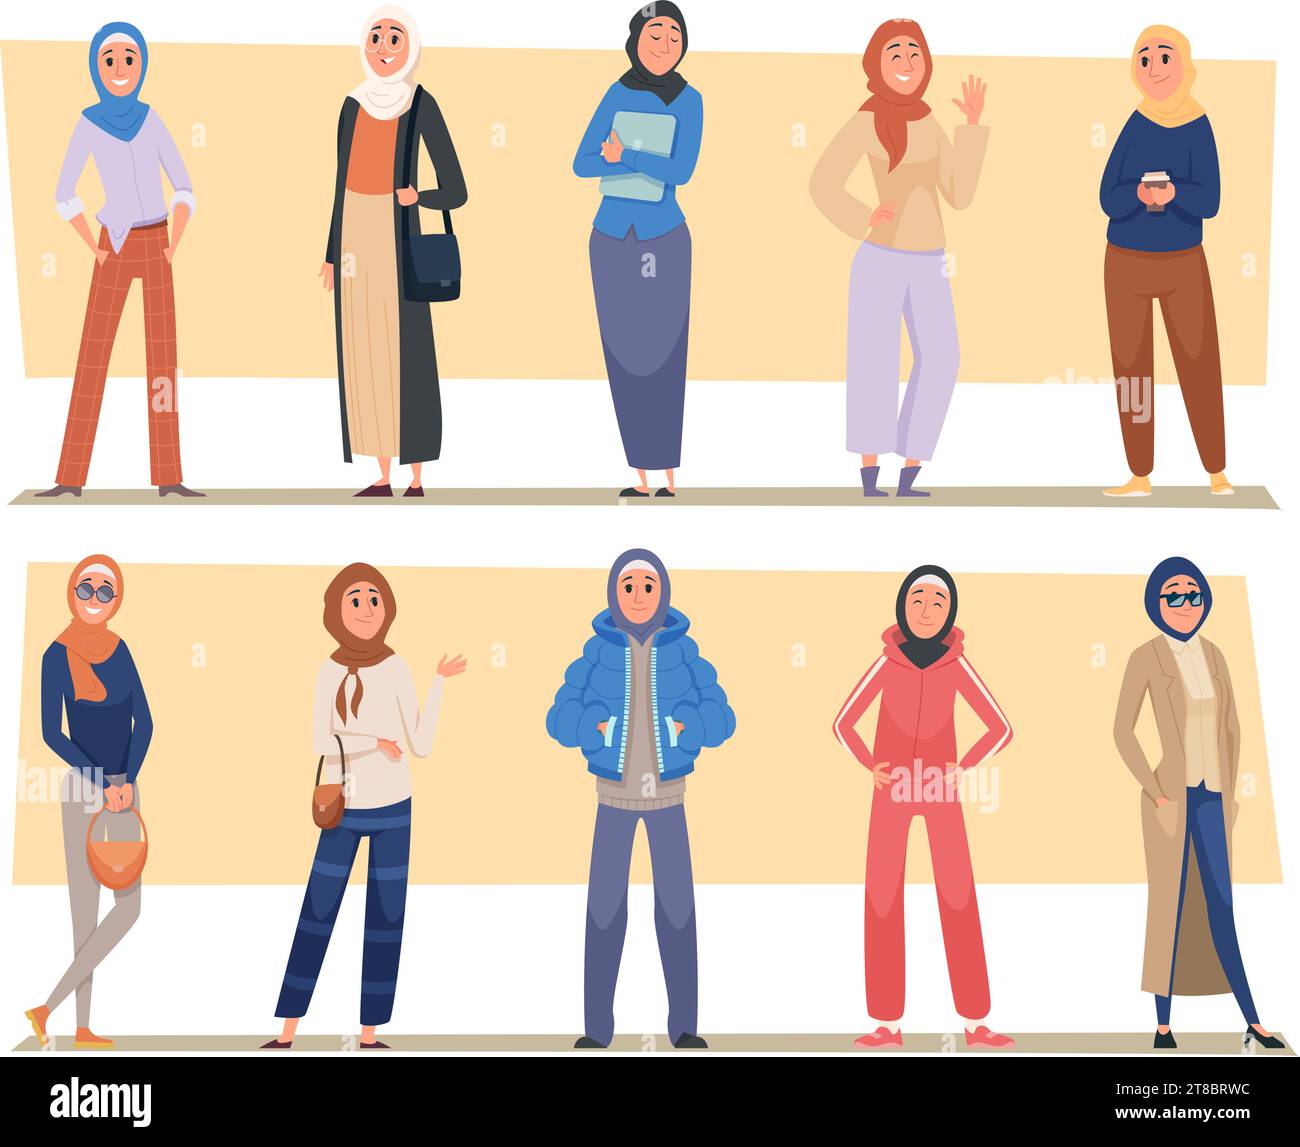 Arabische Personen. Muslimische Frau im Hijab weibliche arabische Menschen in Kleidung exakte Vektorillustrationen Stock Vektor